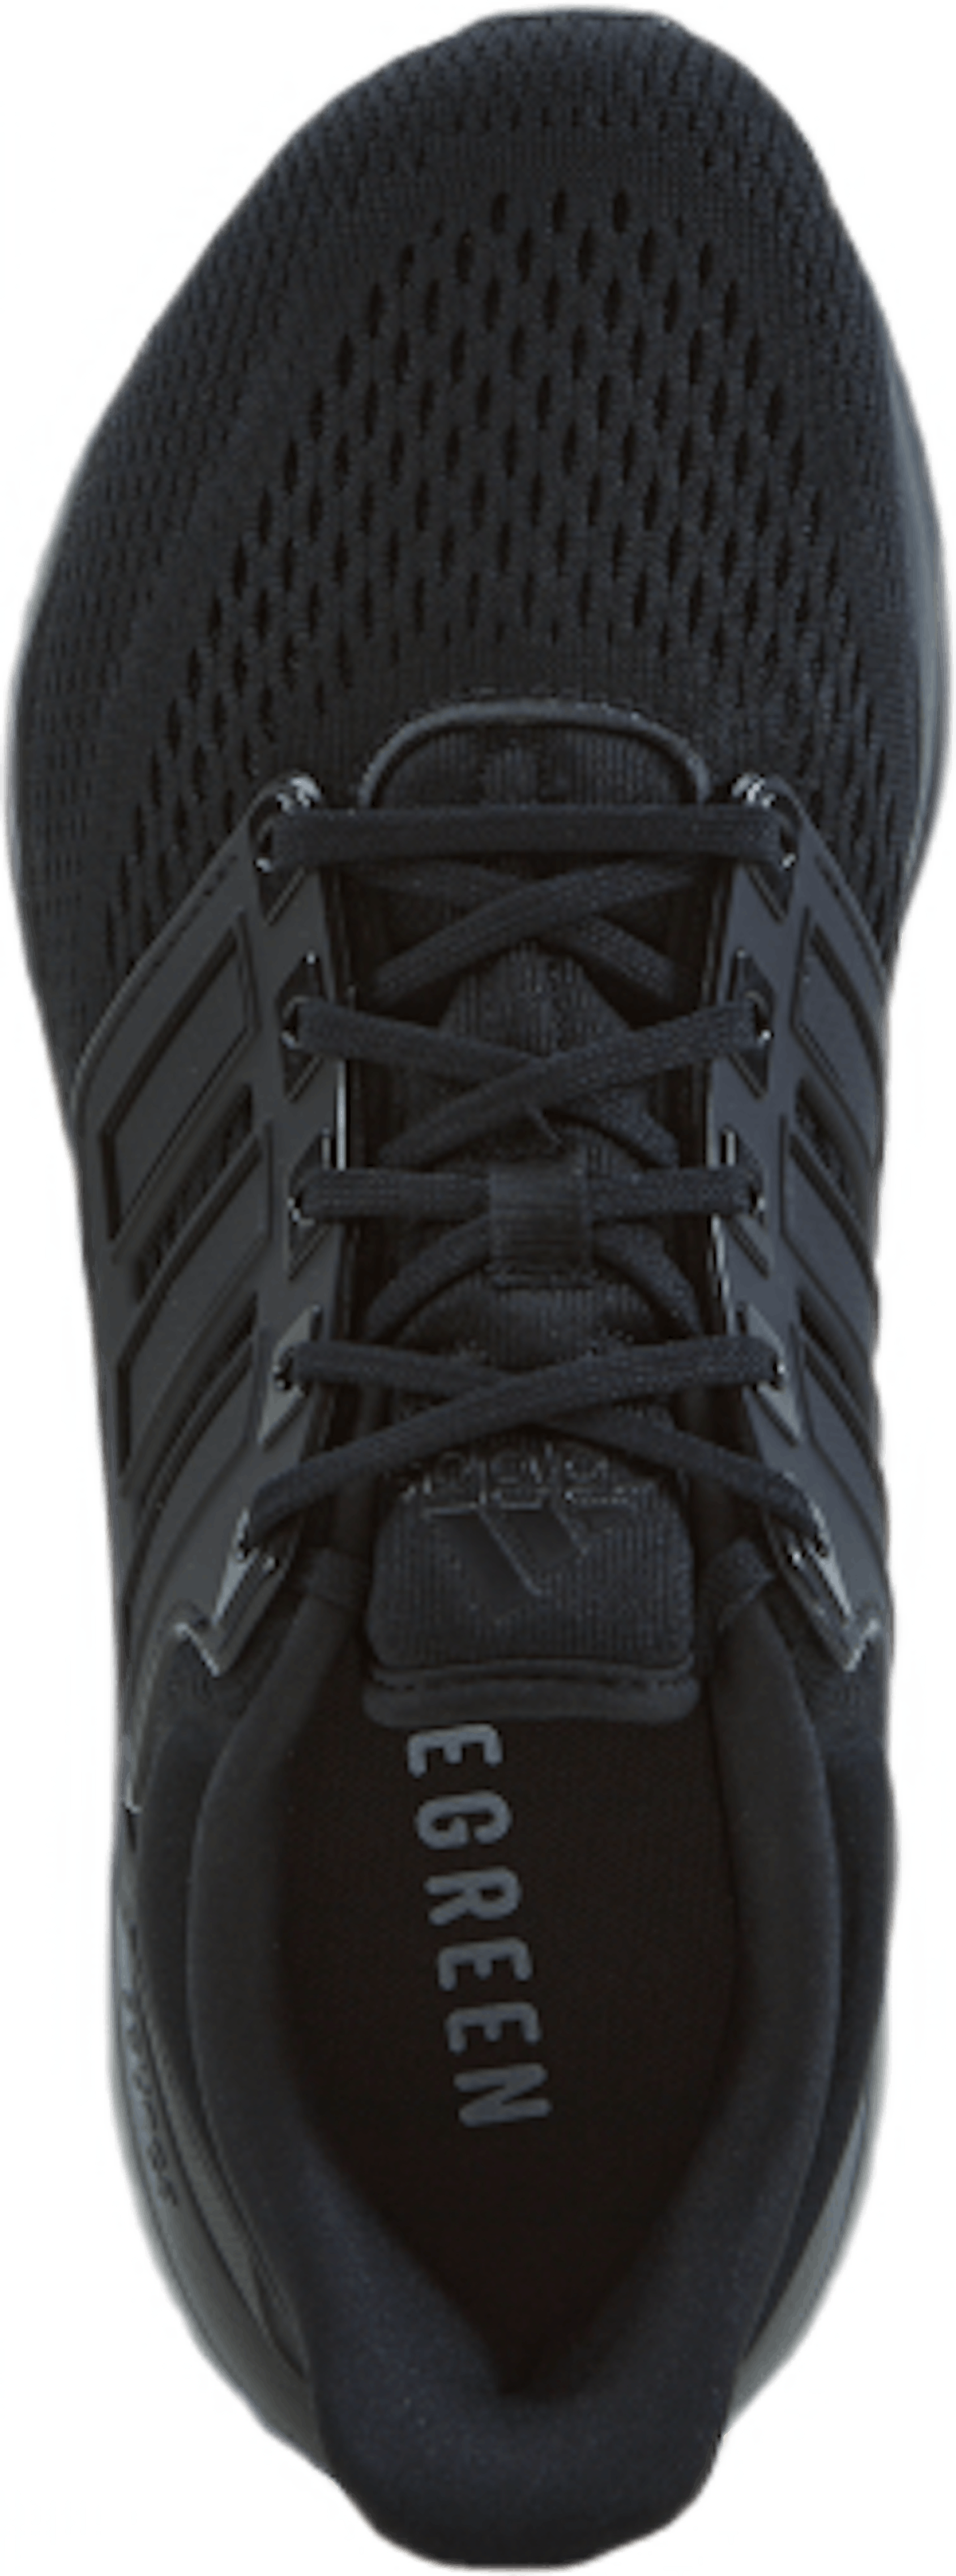 EQ21 Run Shoes Core Black / Core Black / Core Black